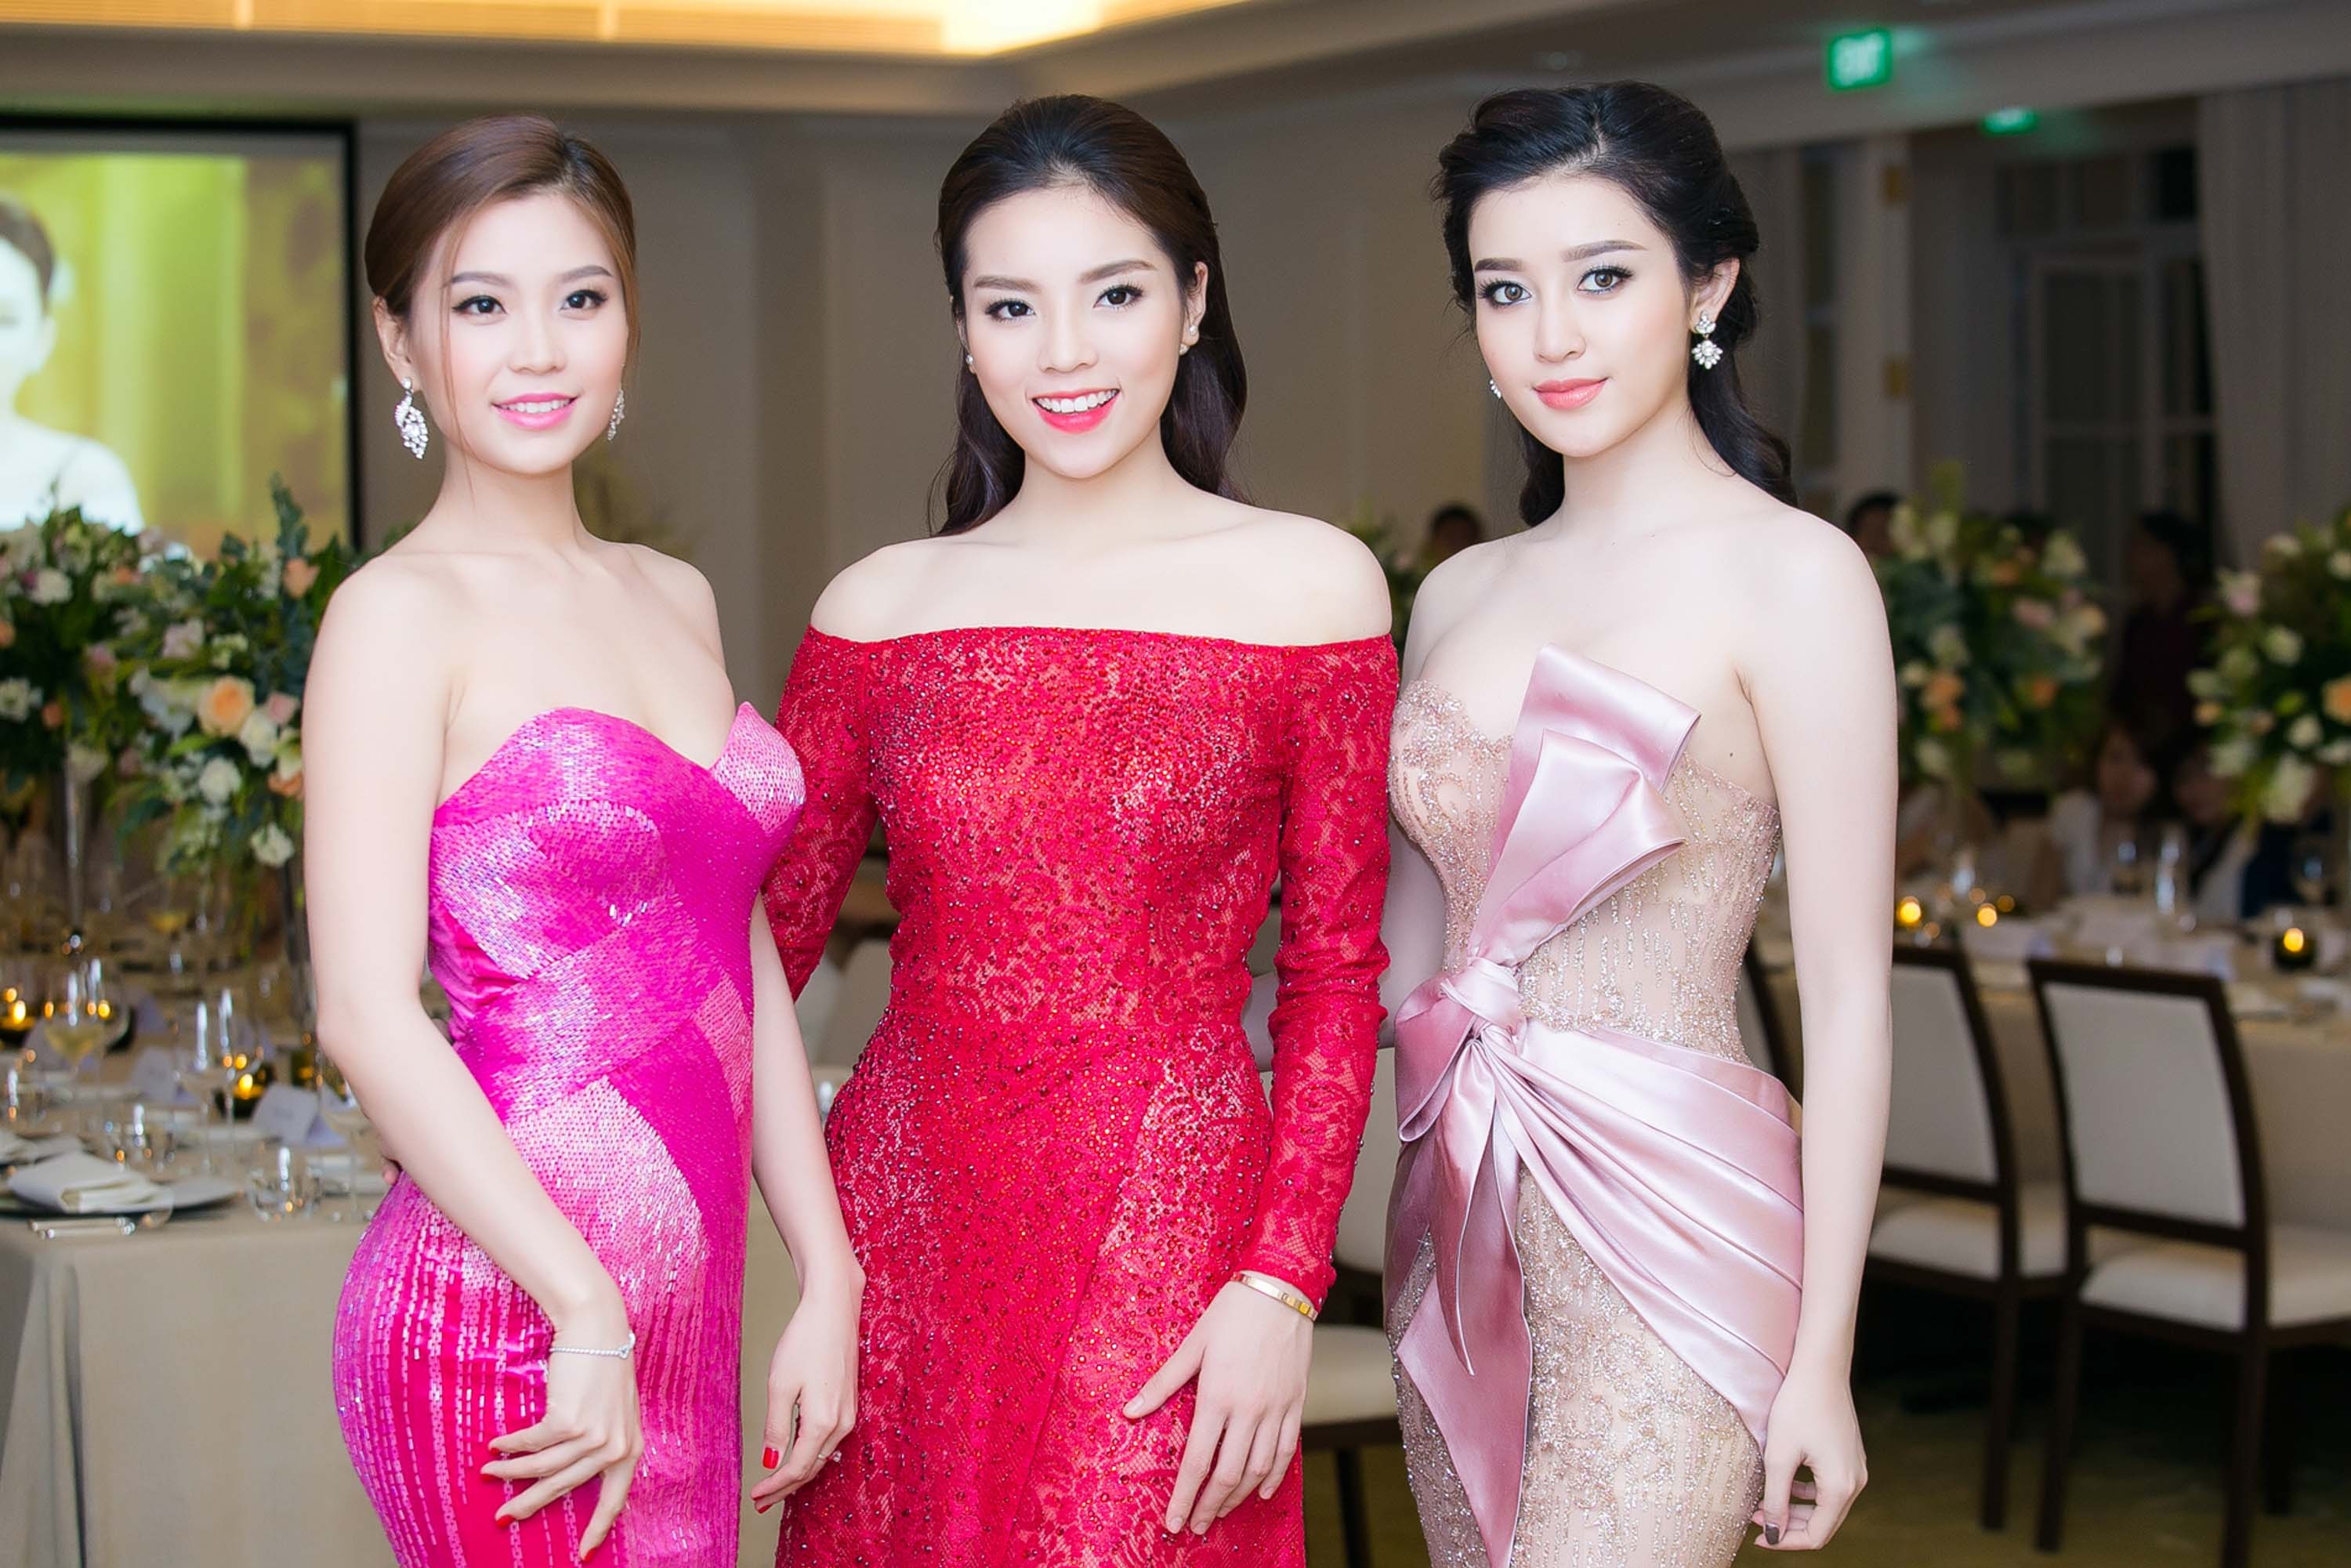 
Không kém cạnh 2 người đẹp, Diễm Trang cũng quyến rũ với váy đuôi cá hồng cánh sen. Người đẹp hiền dịu với phong cách trang điểm tông nâu cổ điển. 
